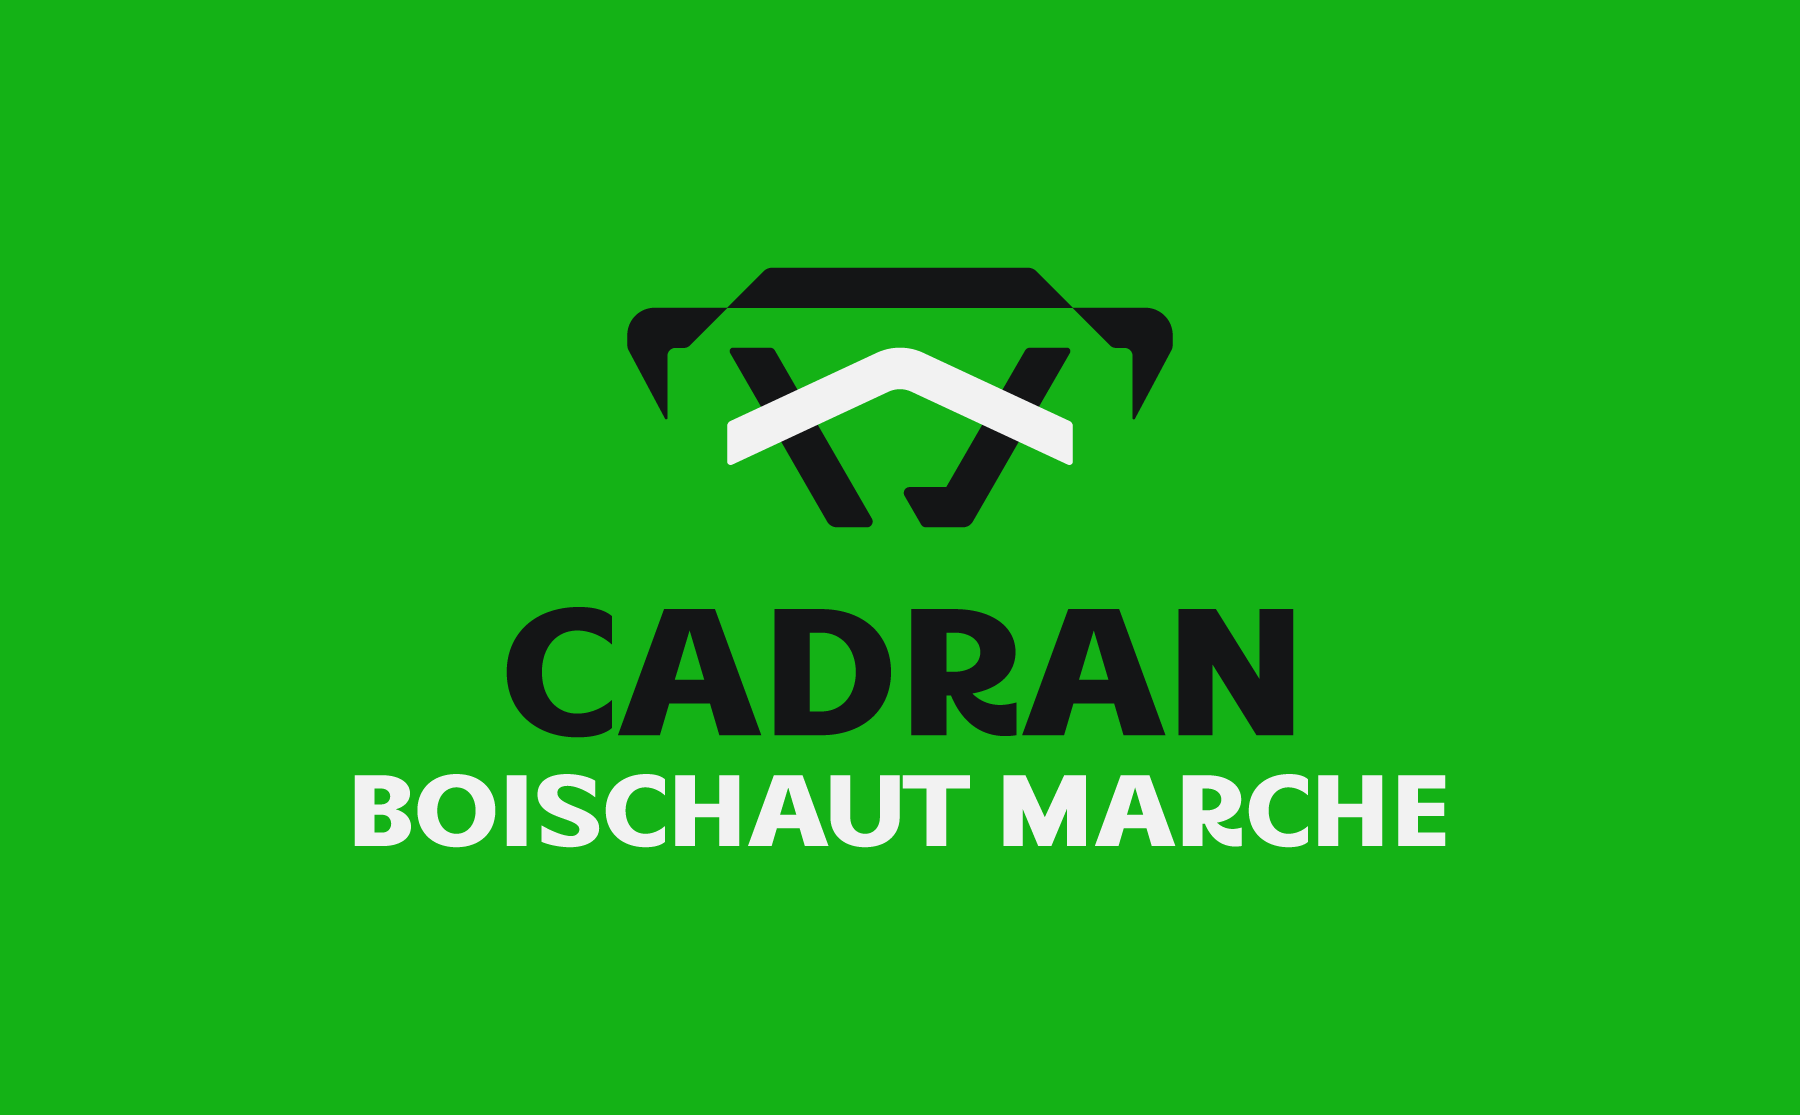 Marché Boischaut Marche